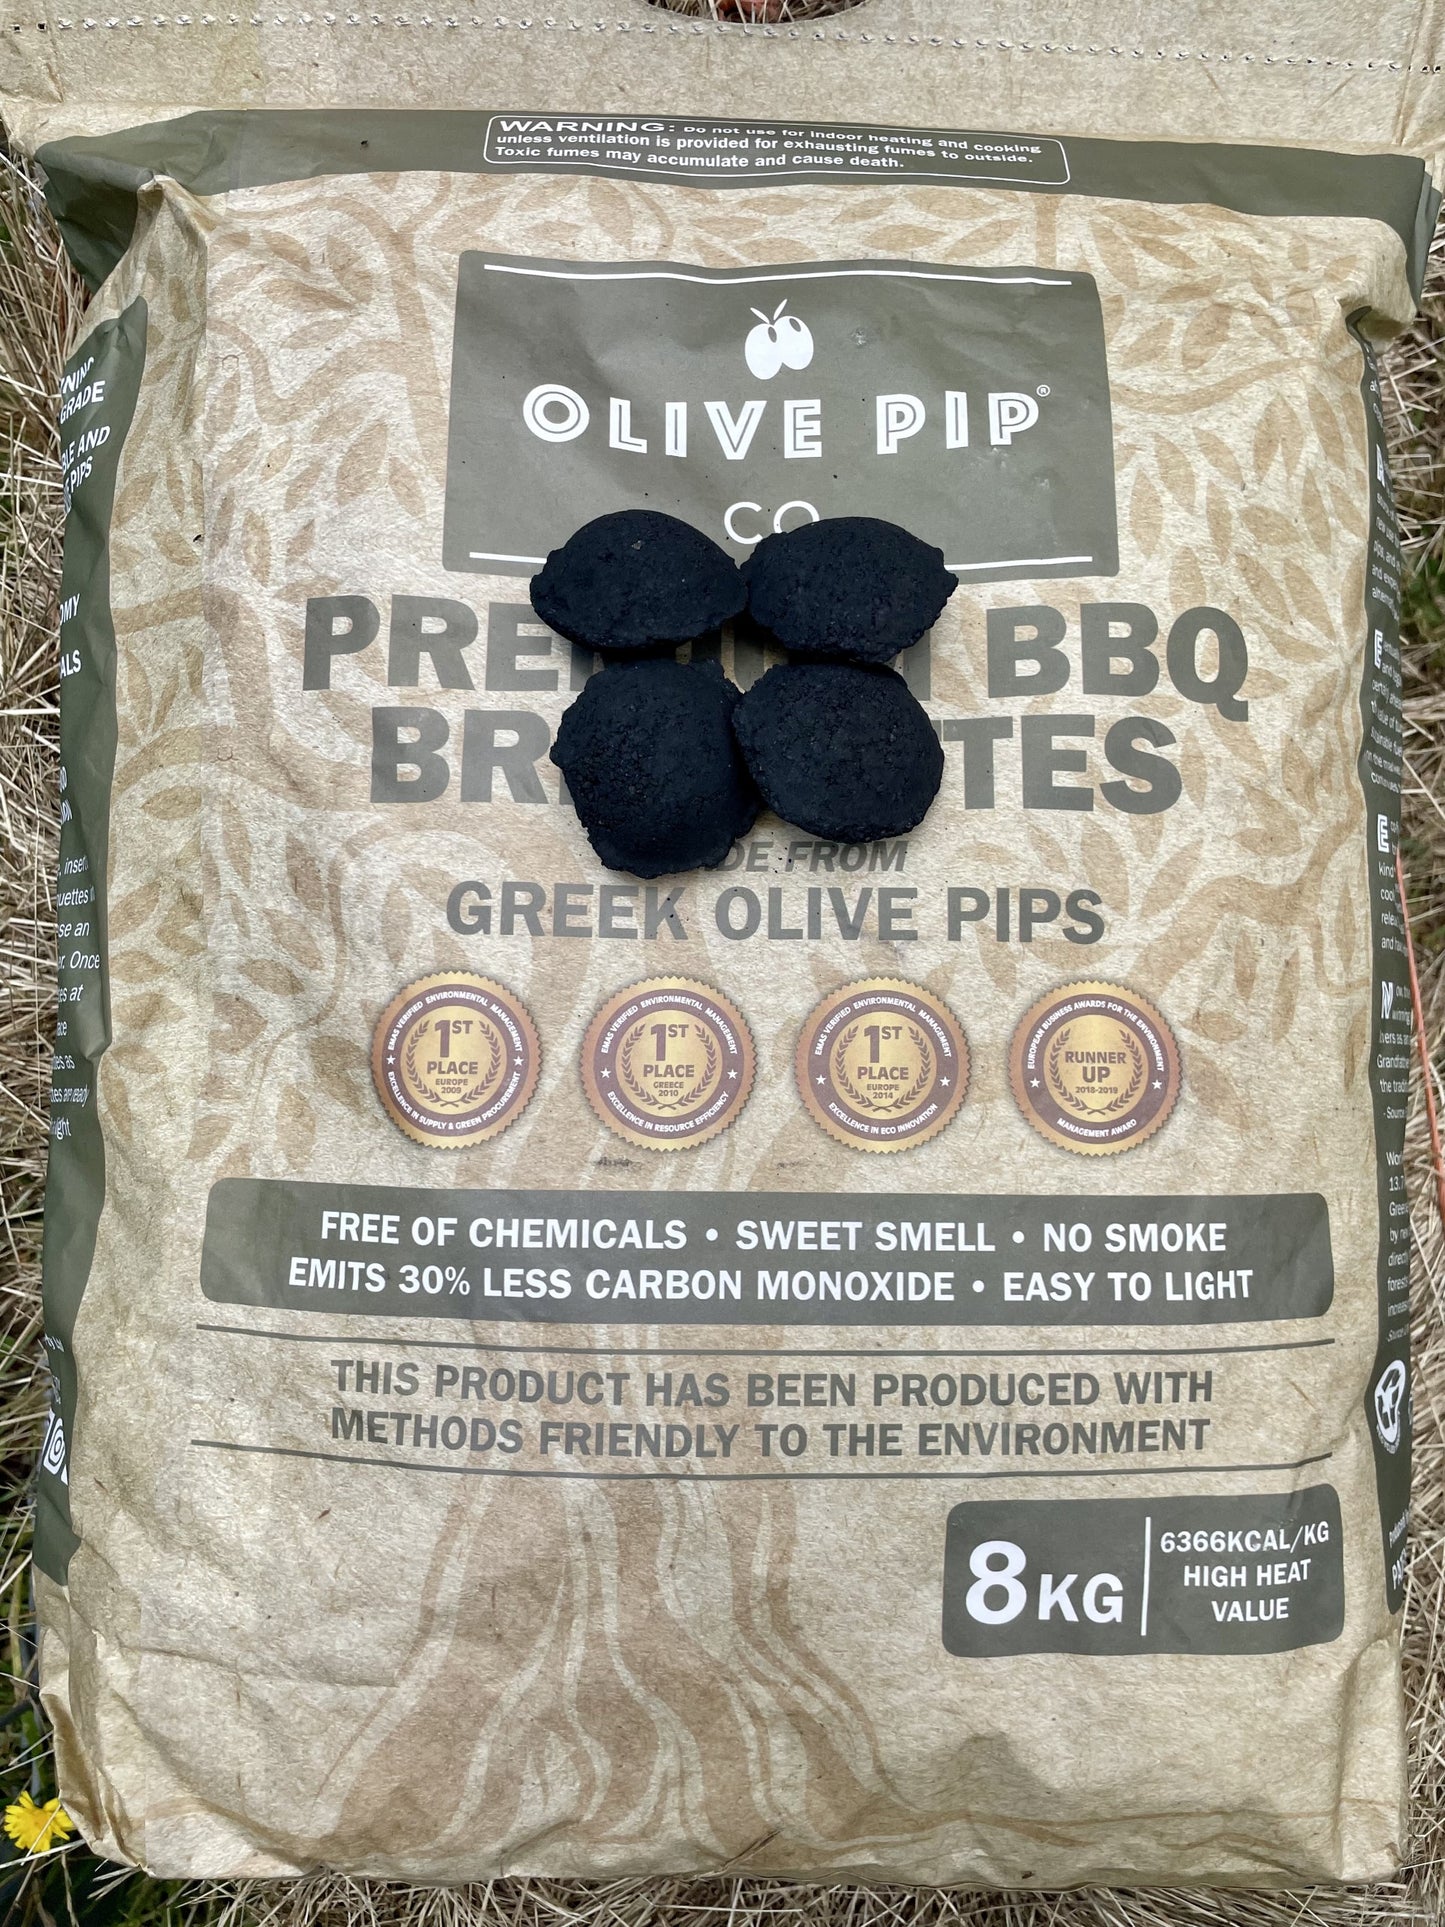 Premium BBQ Briquettes by Olive Pip Co. 8Kg Bags